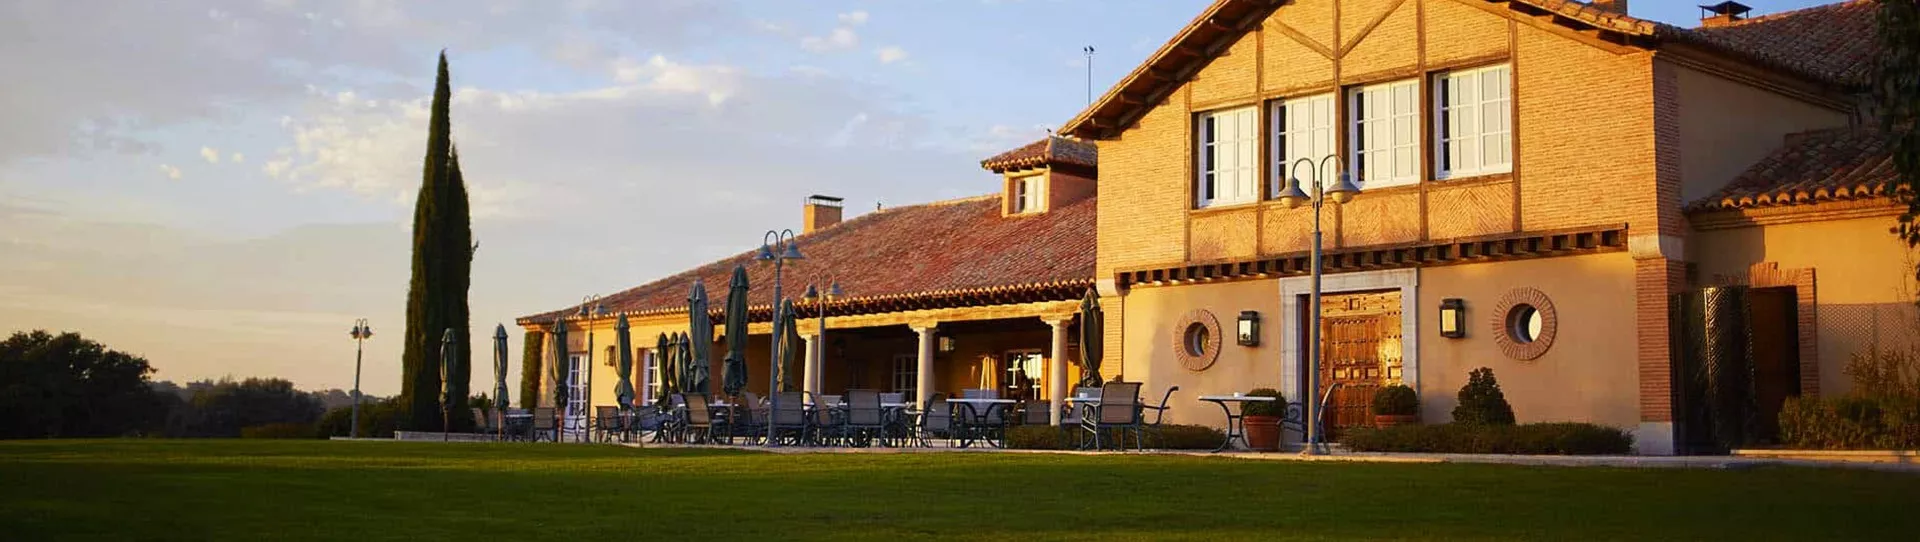 Spain golf courses - Real Sociedad Hipica Española Club de Campo - Photo 1